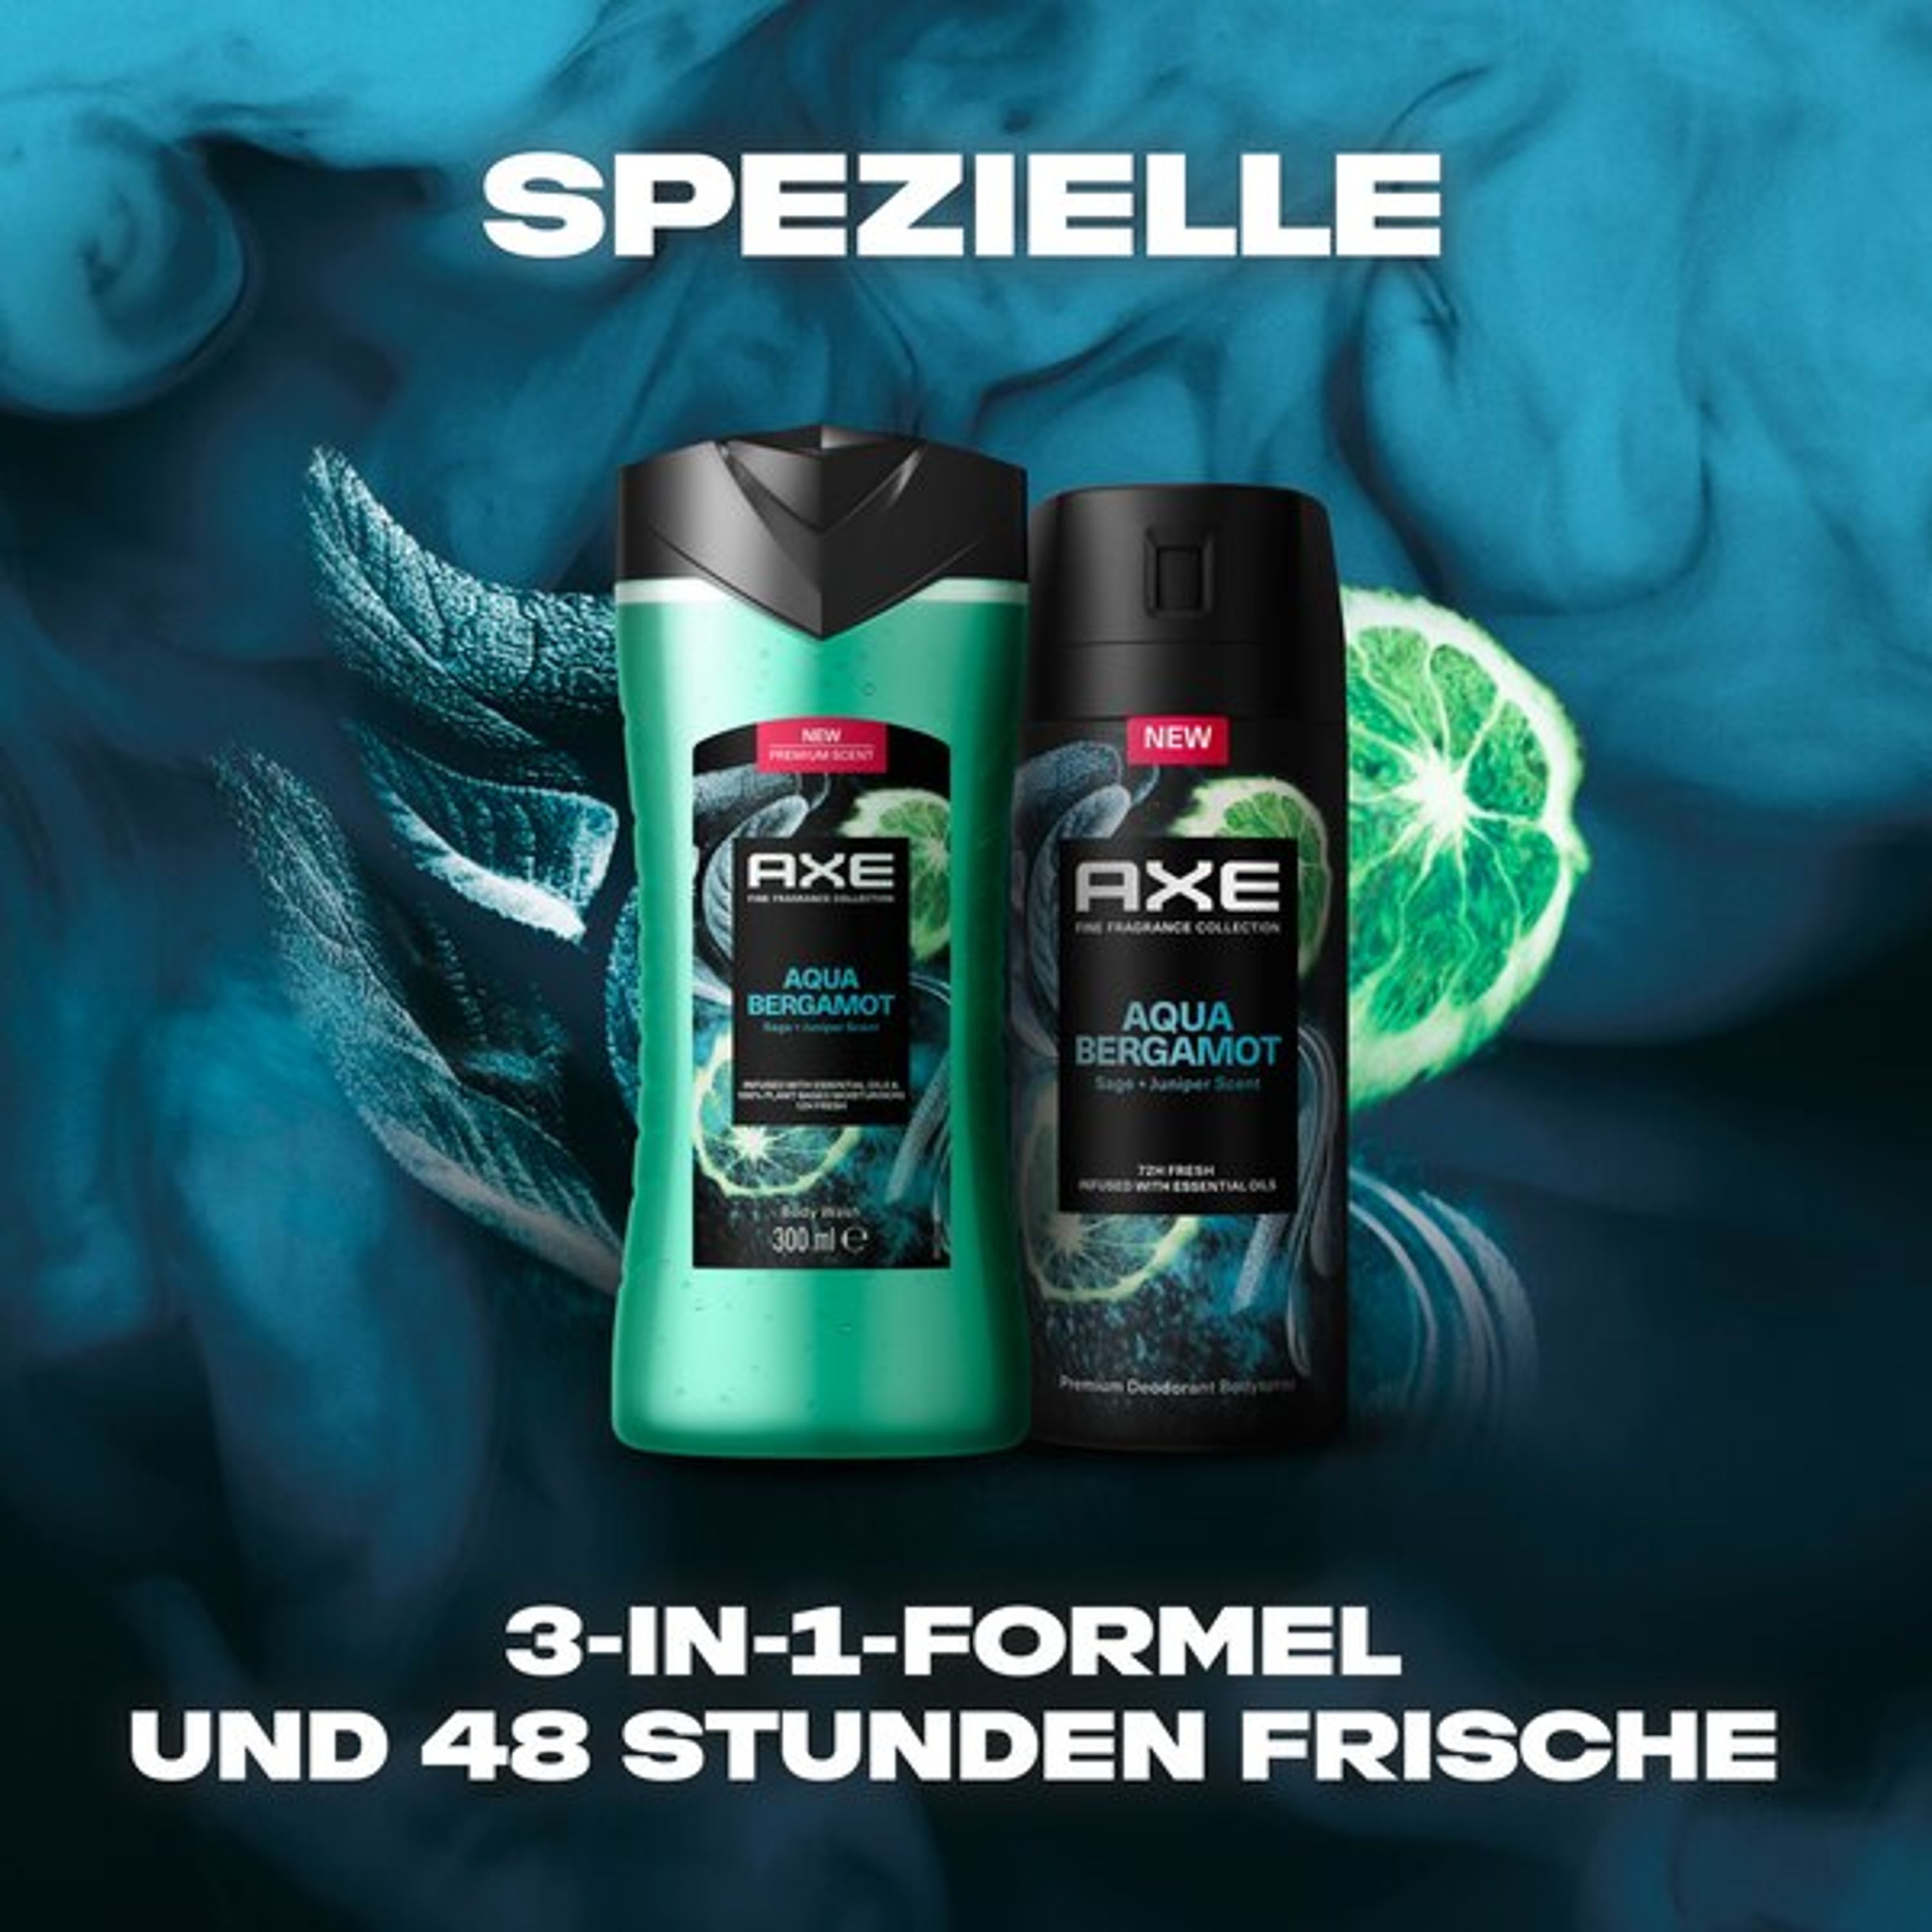 Axe Fine Fragrance Geschenkset "Aqua Bergamot" Pflegeset mit Bodyspray und Duschgel (150 ml + 300 ml)